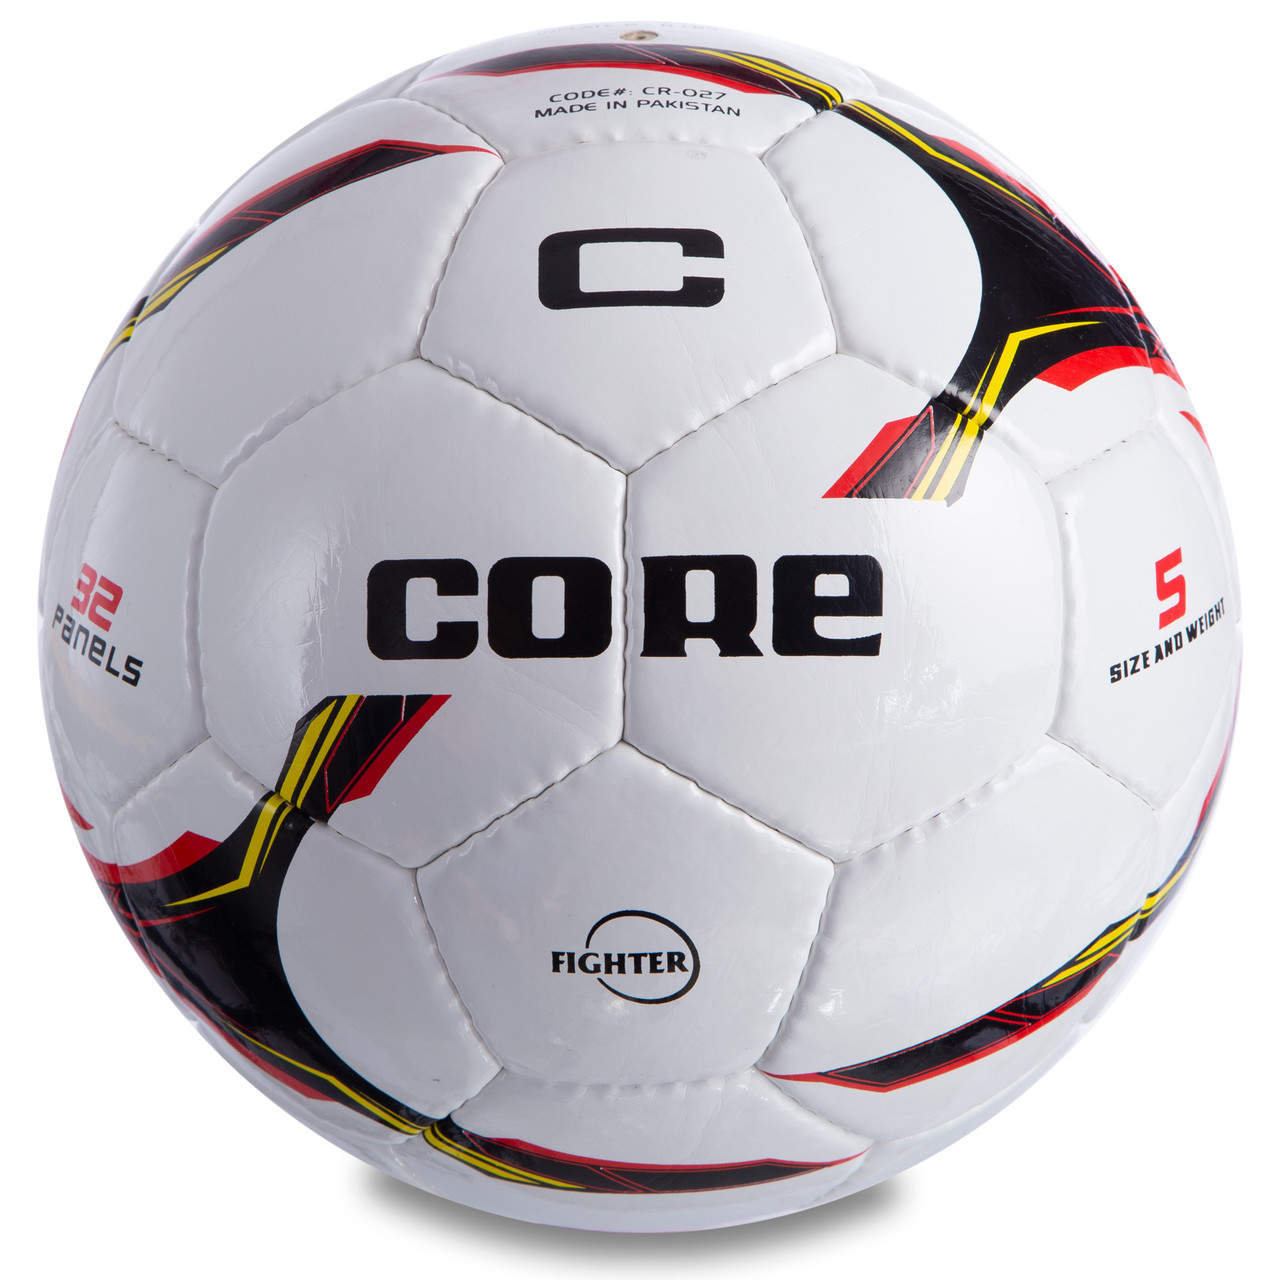 Мяч футбольный CORE SHINY FIGHTER CR-027 №5 PU белый-черный-красный, фото 1